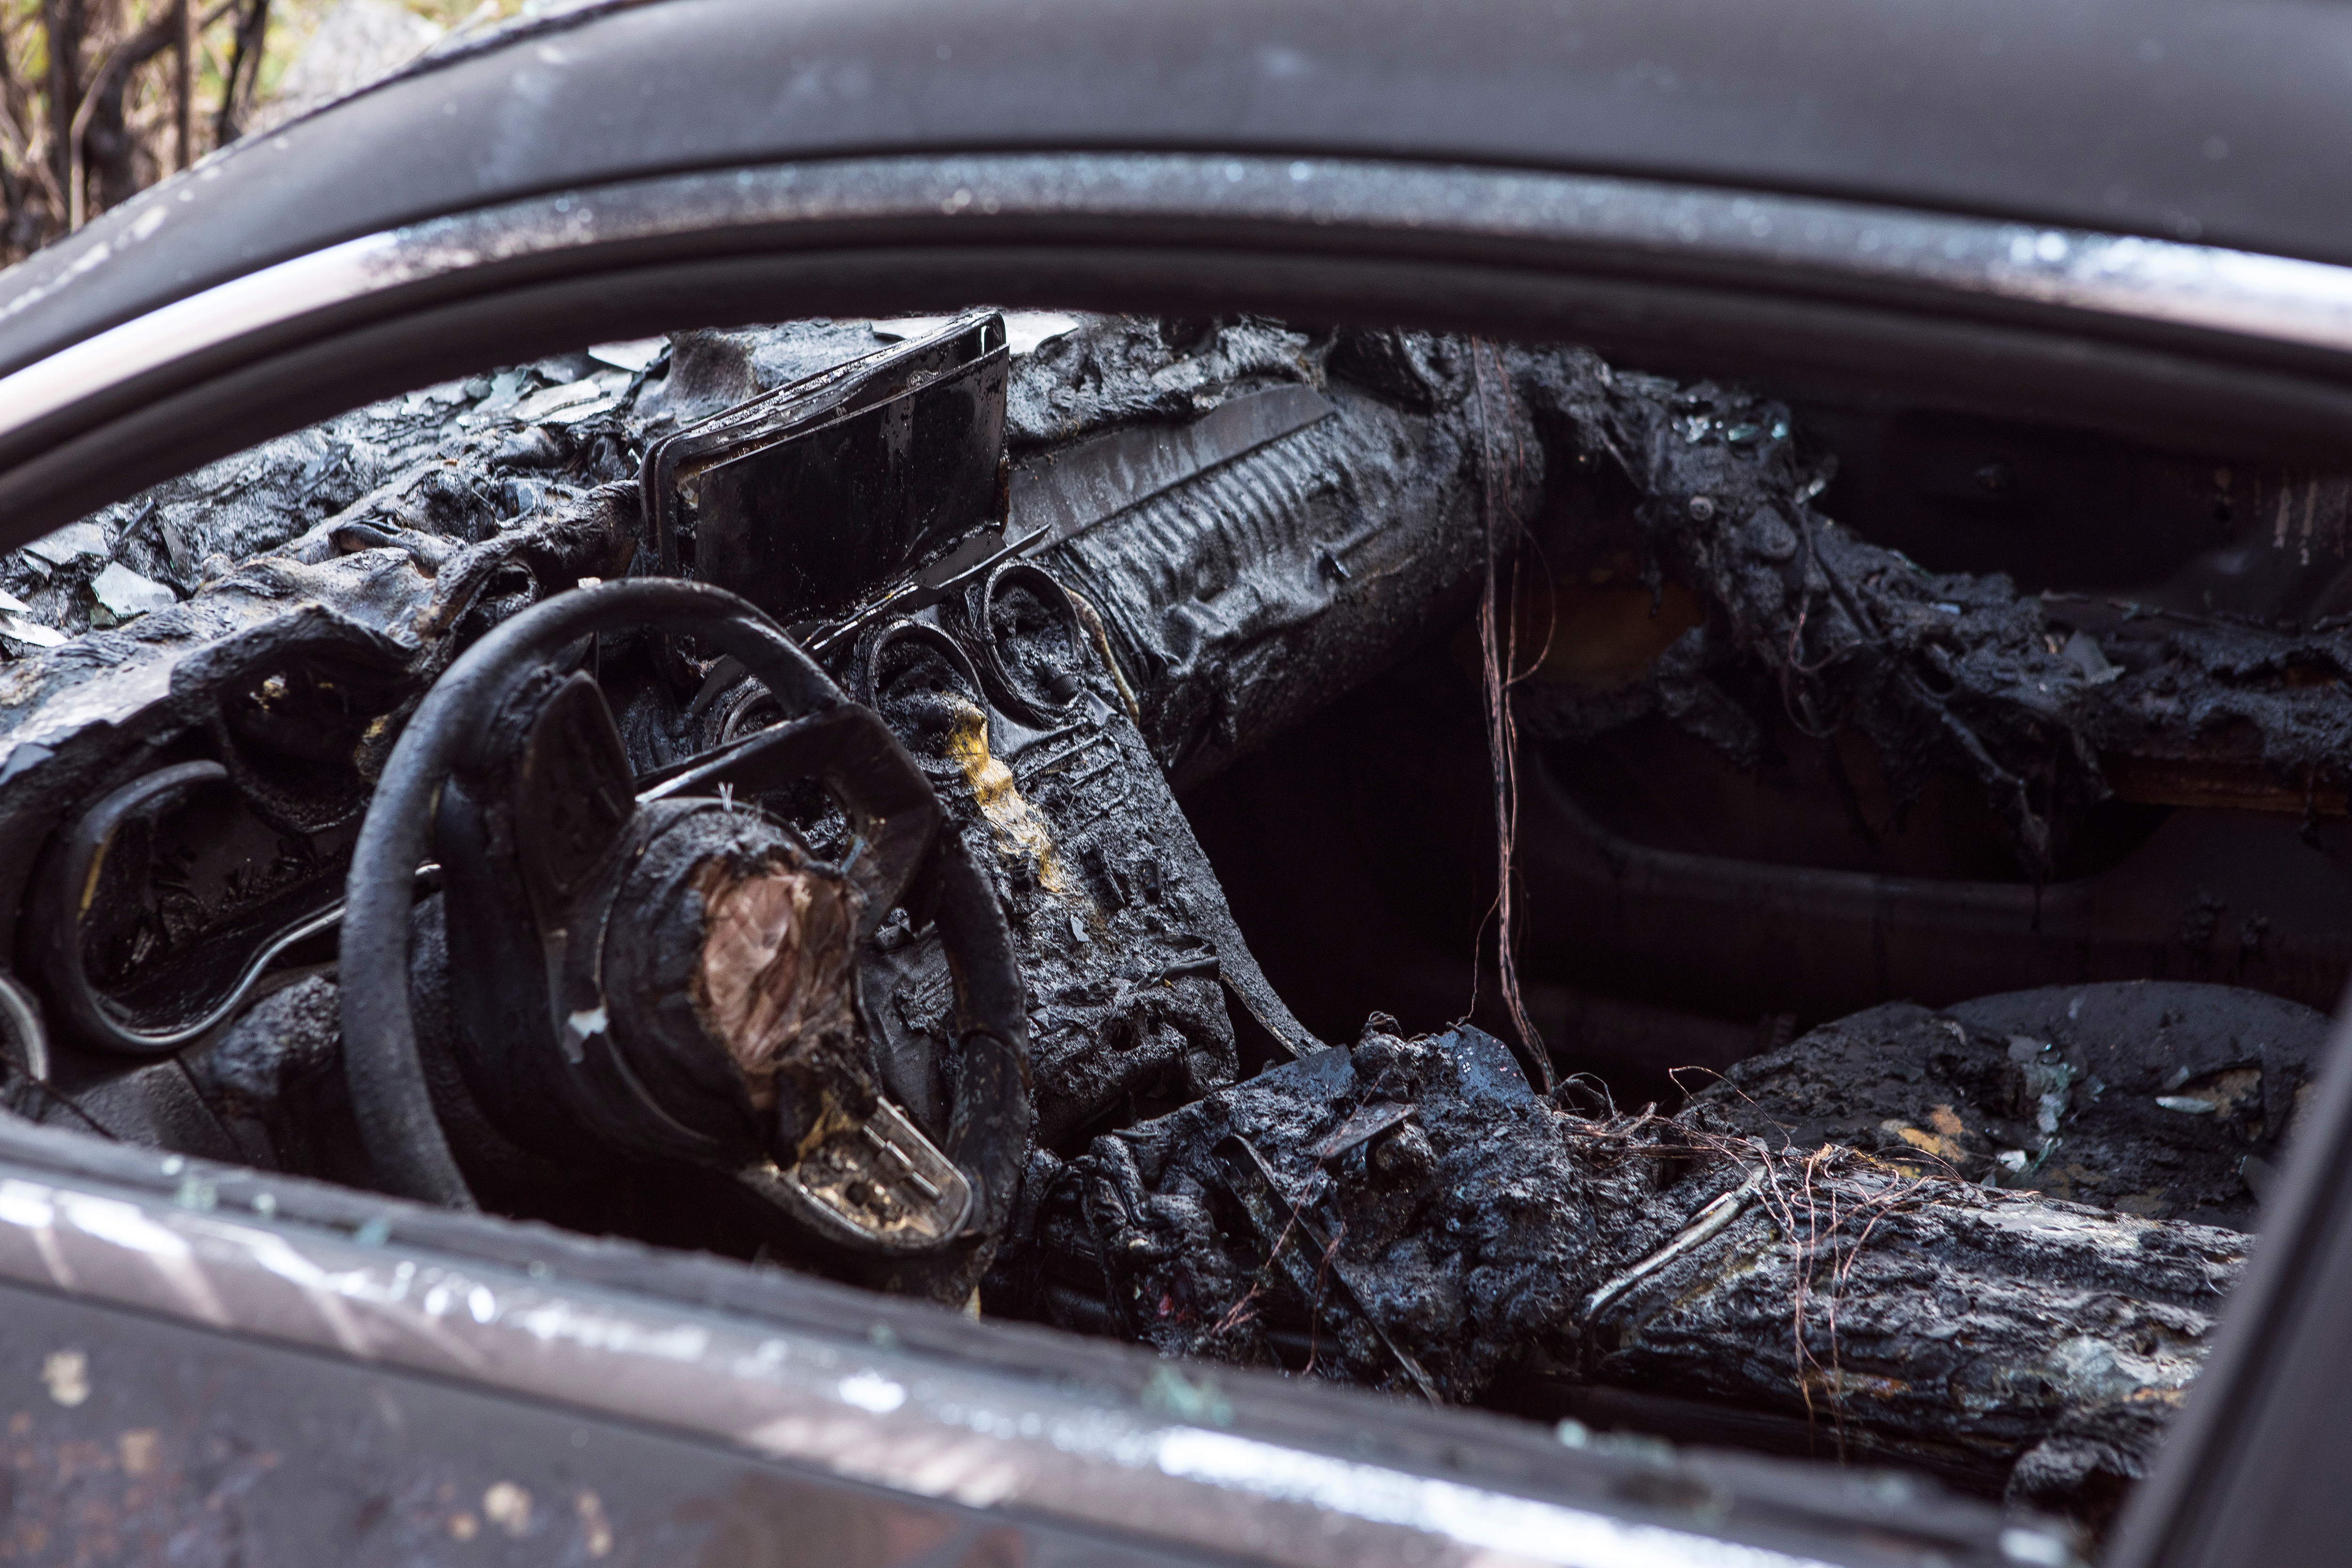     Le corps d’une femme retrouvé dans un véhicule incendié

